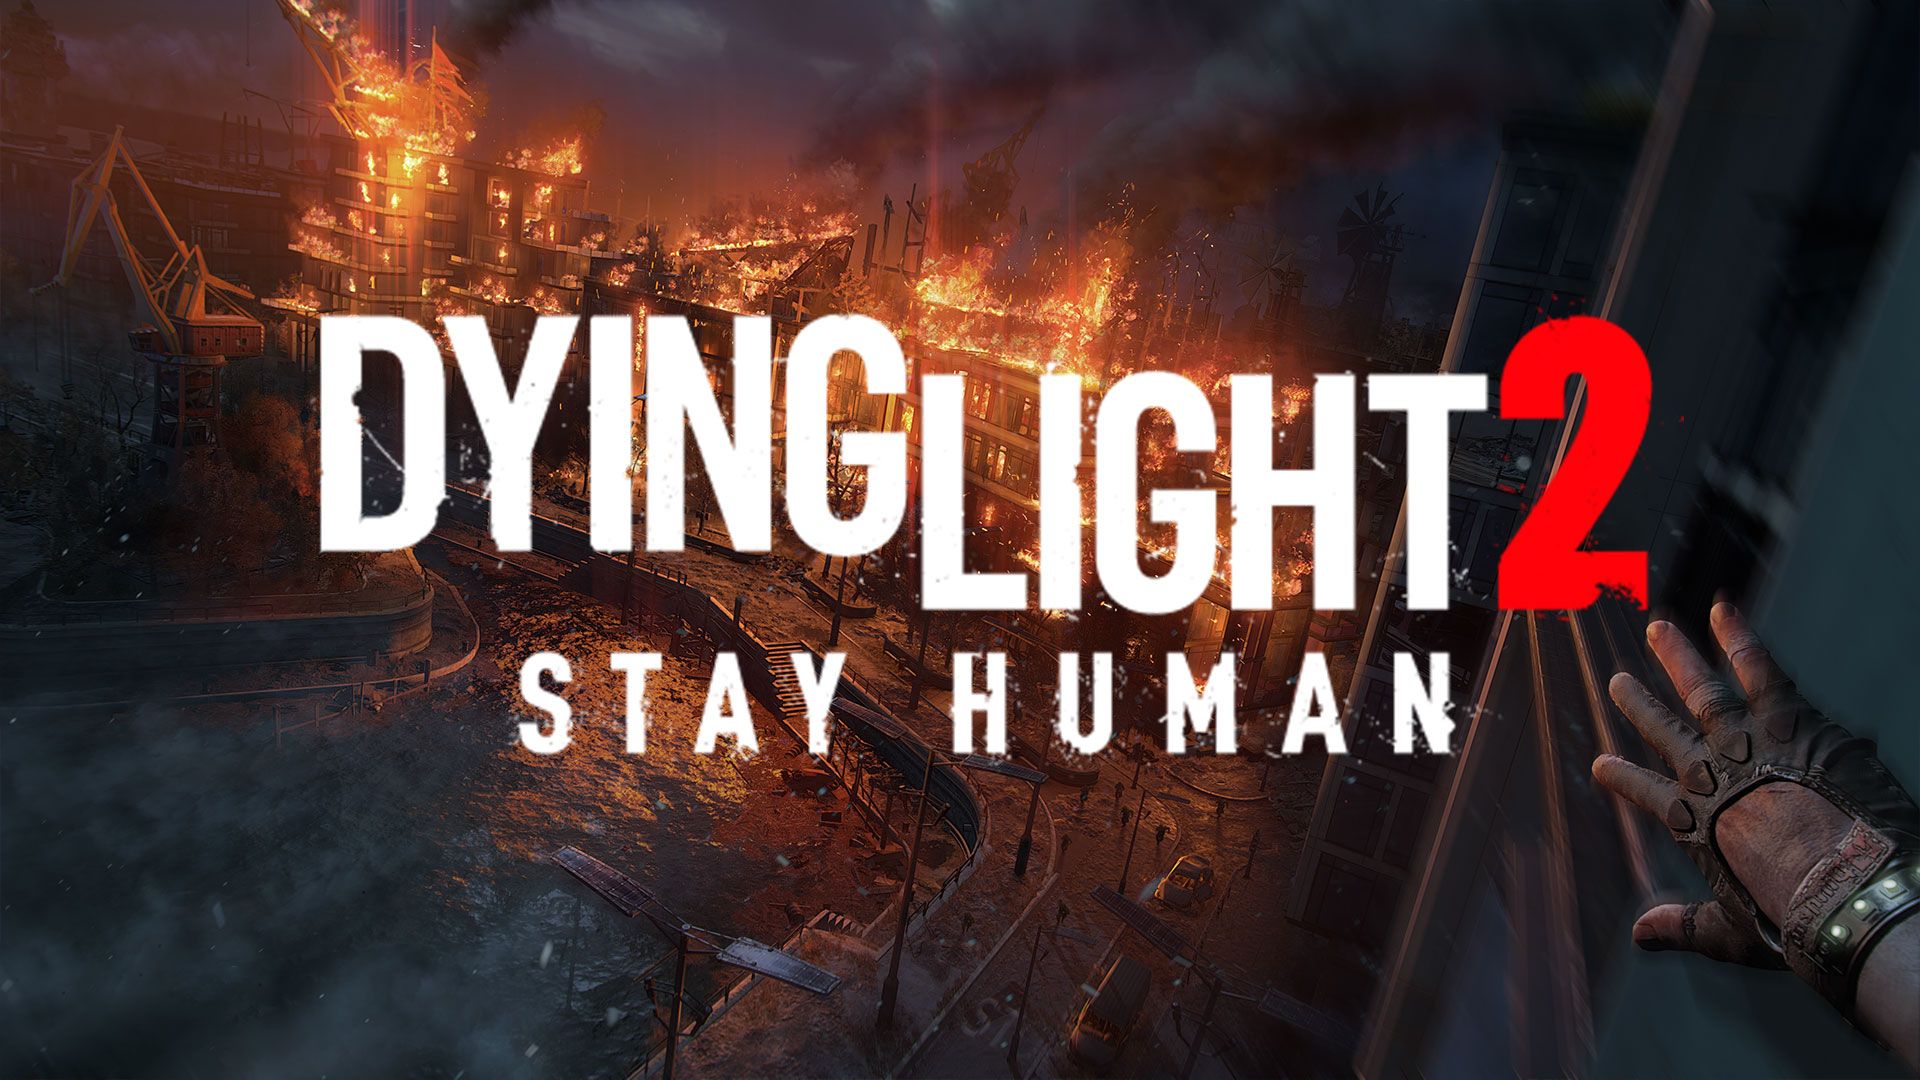 Премиерата на Dying Light 2: Stay Human се отлага с няколко месеца